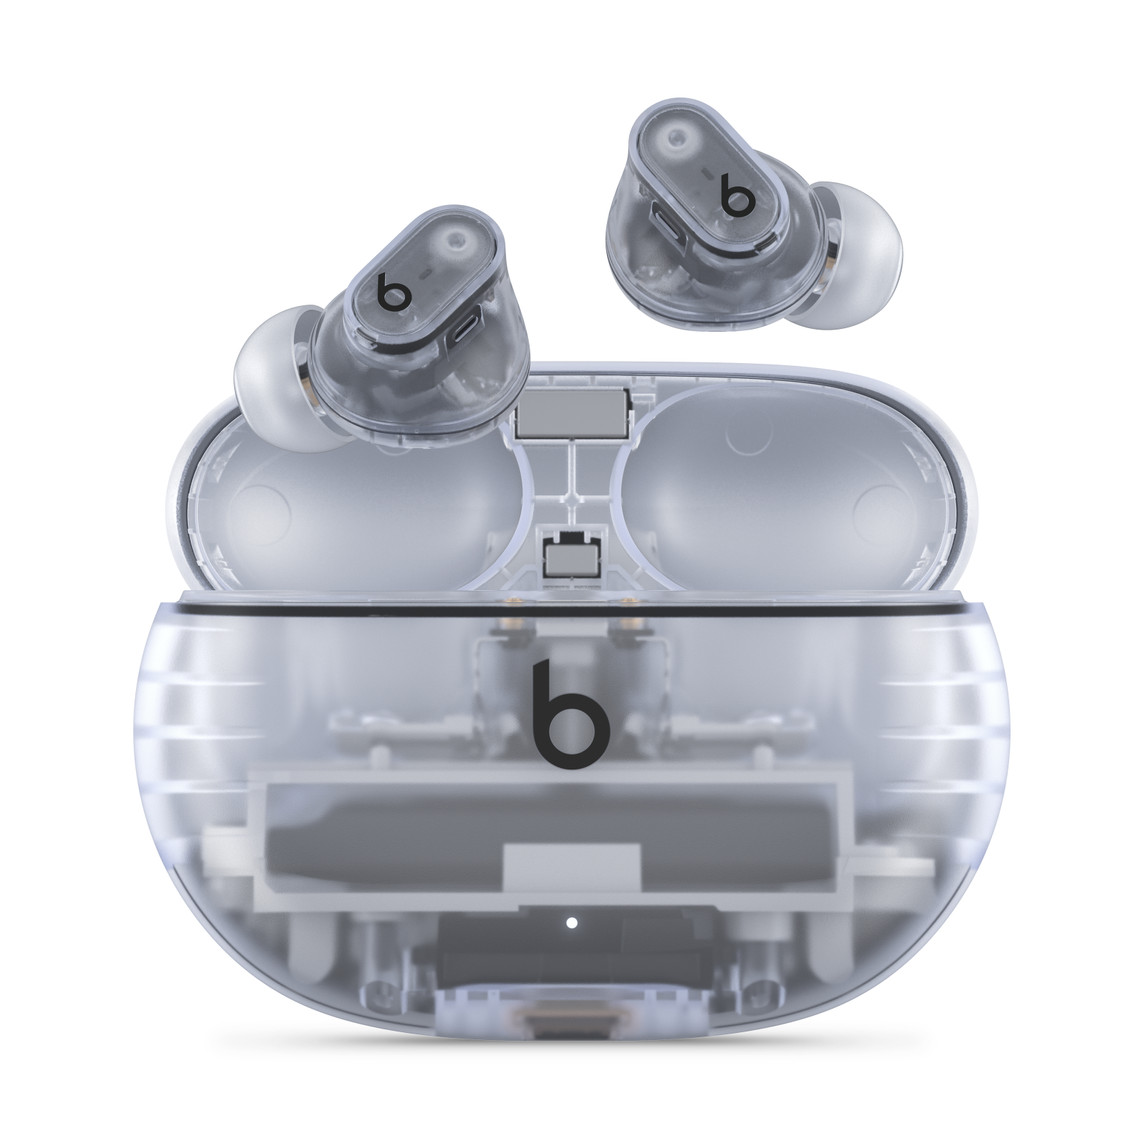 トランスペアレントのBeats Studio Buds + — ワイヤレスノイズキャンセリングイヤフォン。便利な充電ケースの上に配置され、Beatsのロゴが見えている。